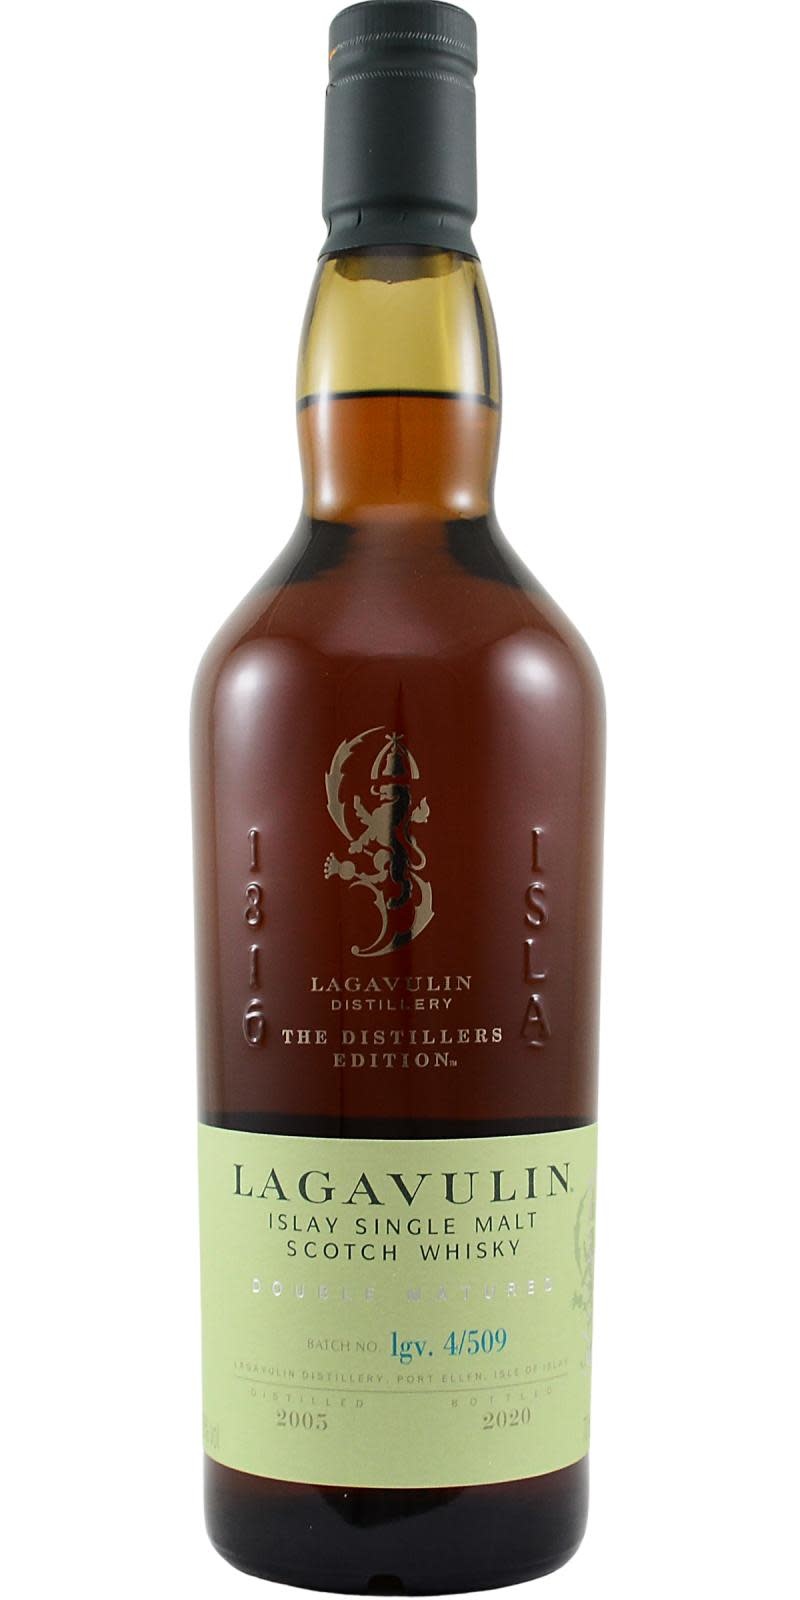 Lagavulin 2005 - 2020 Distillers Edition